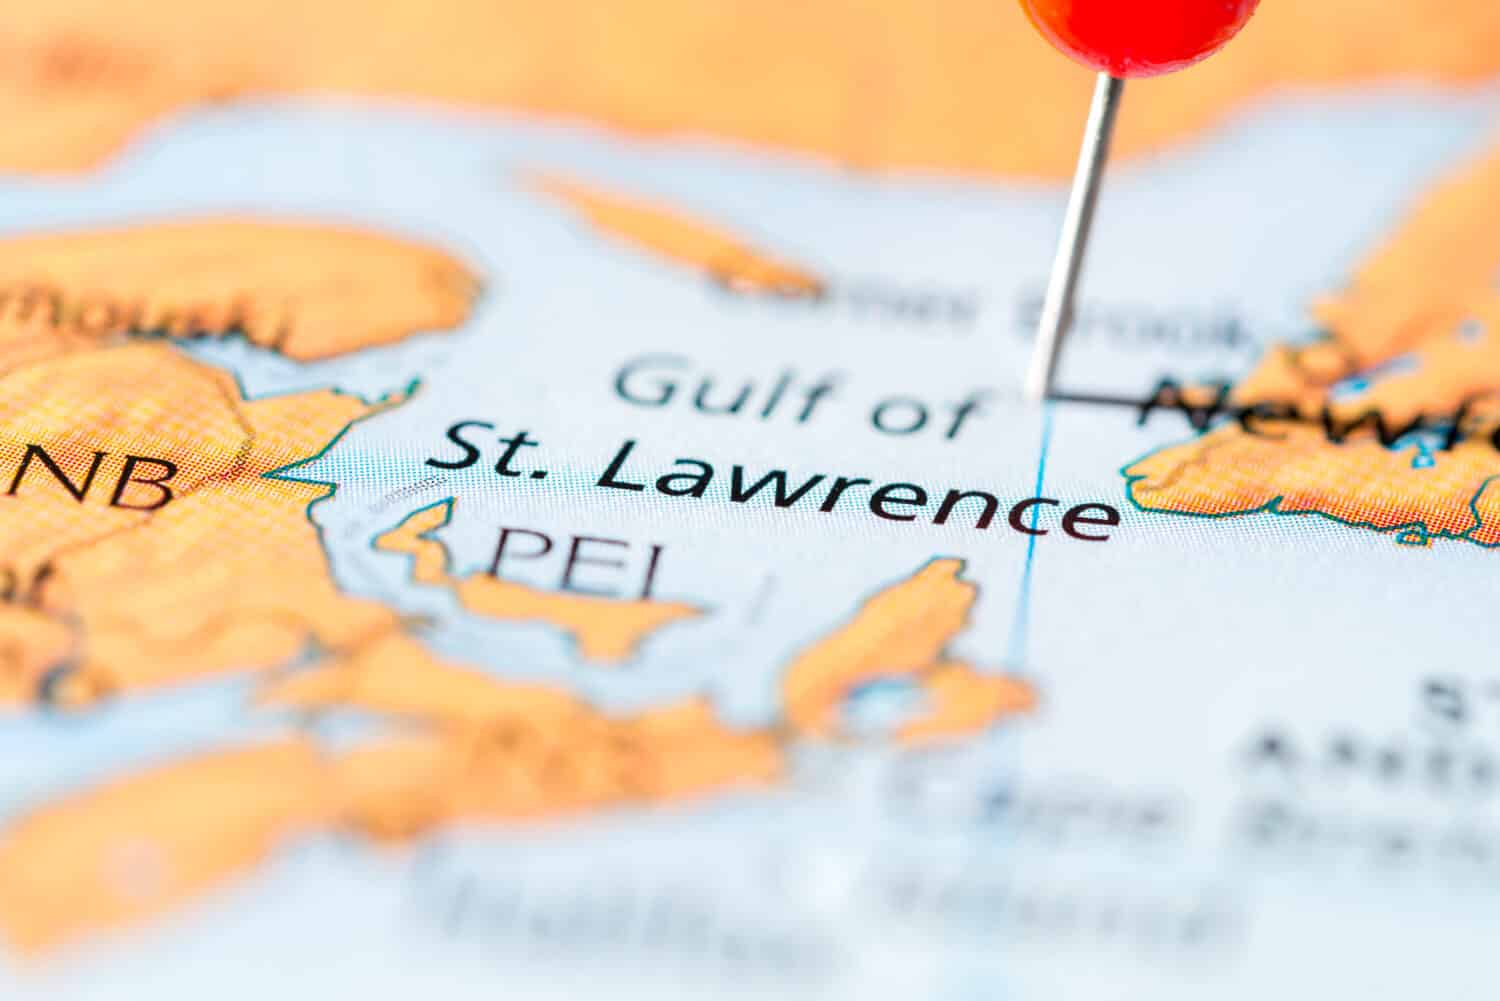 Gulf of St. Lawrance, Canada.